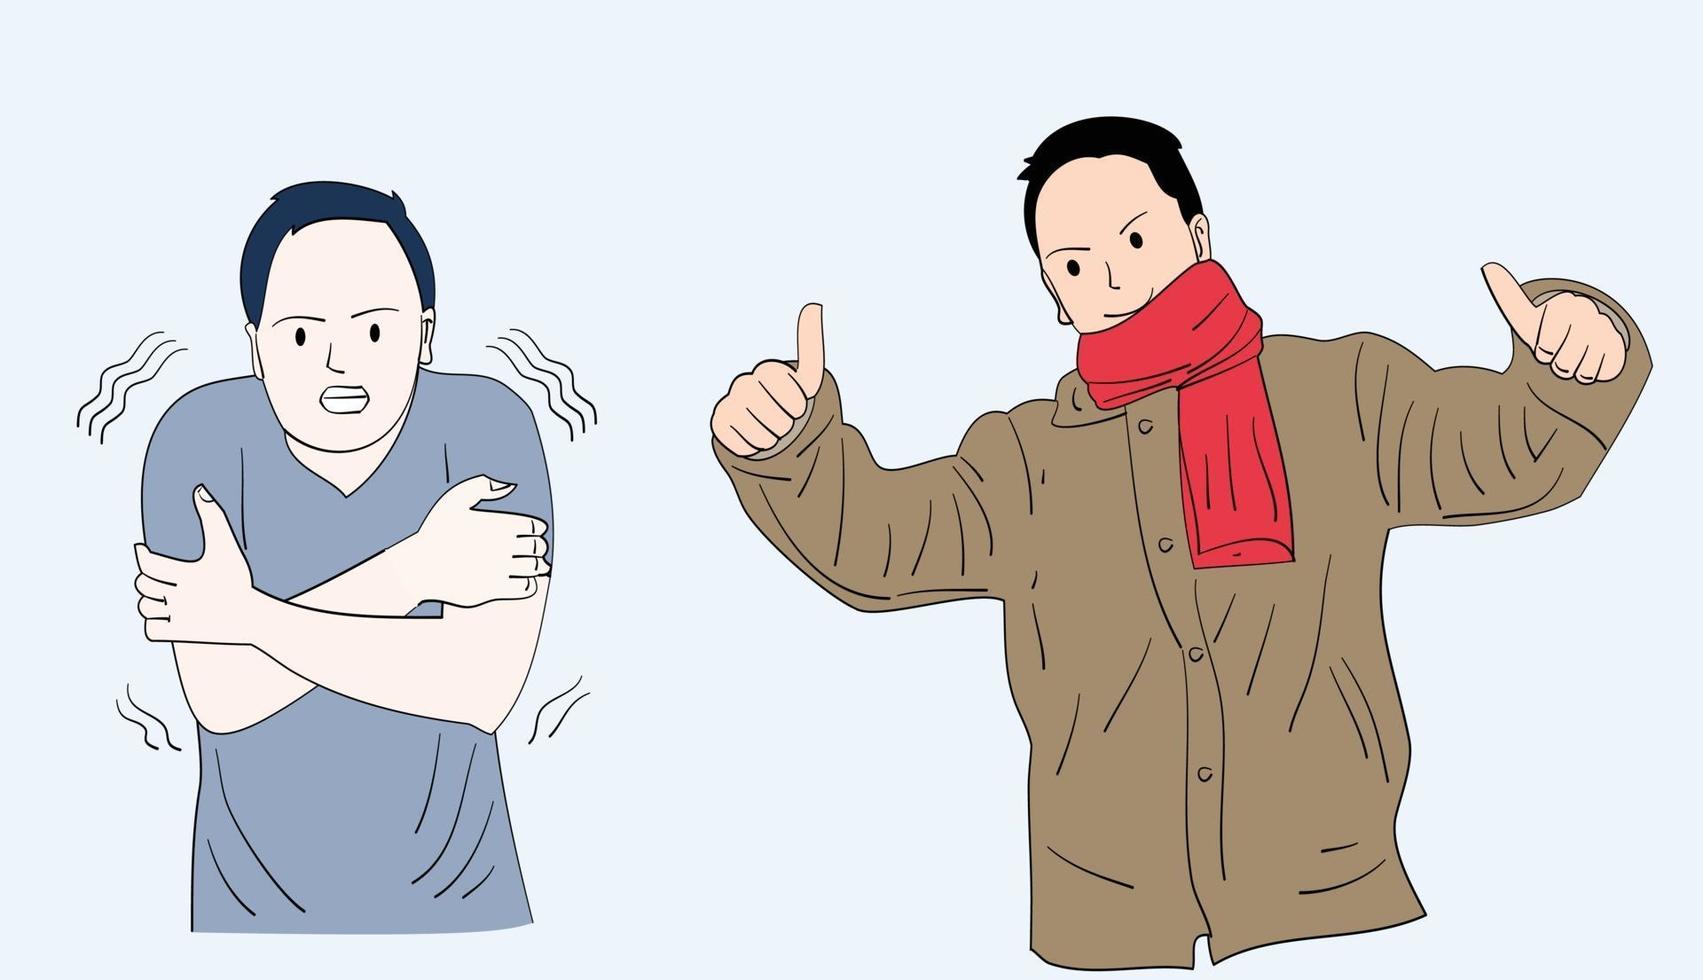 un homme portant une chemise froide. à côté de lui se trouve un homme qui a l'air heureux de porter une veste. illustrations de conception de vecteur de style dessinés à la main.